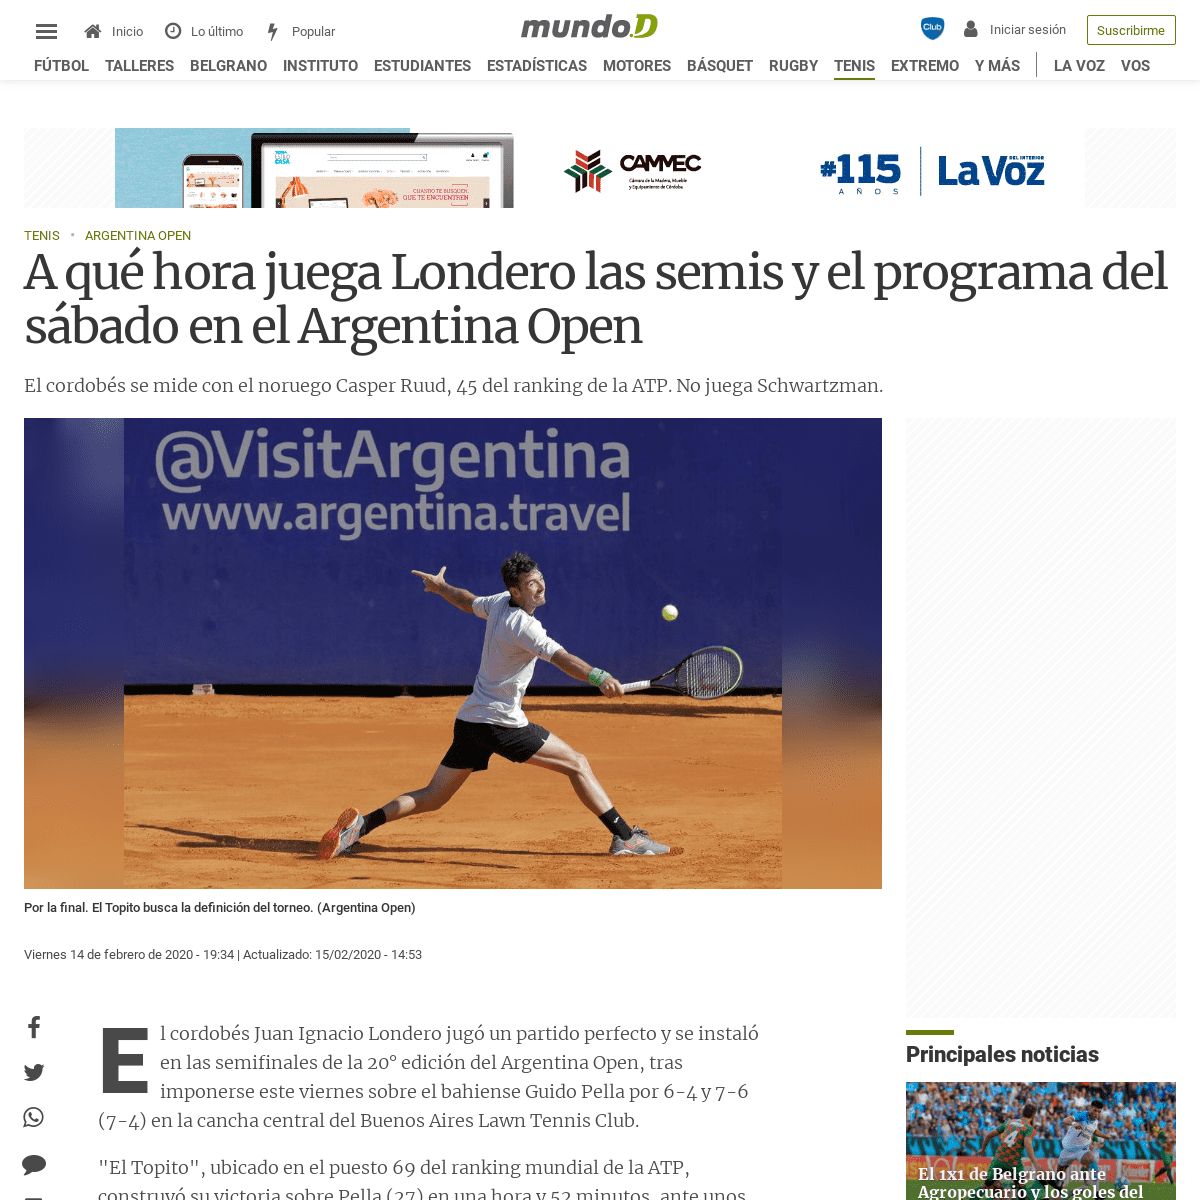 A complete backup of mundod.lavoz.com.ar/tenis/a-que-hora-juega-londero-las-semis-y-el-programa-del-sabado-en-el-argentina-open